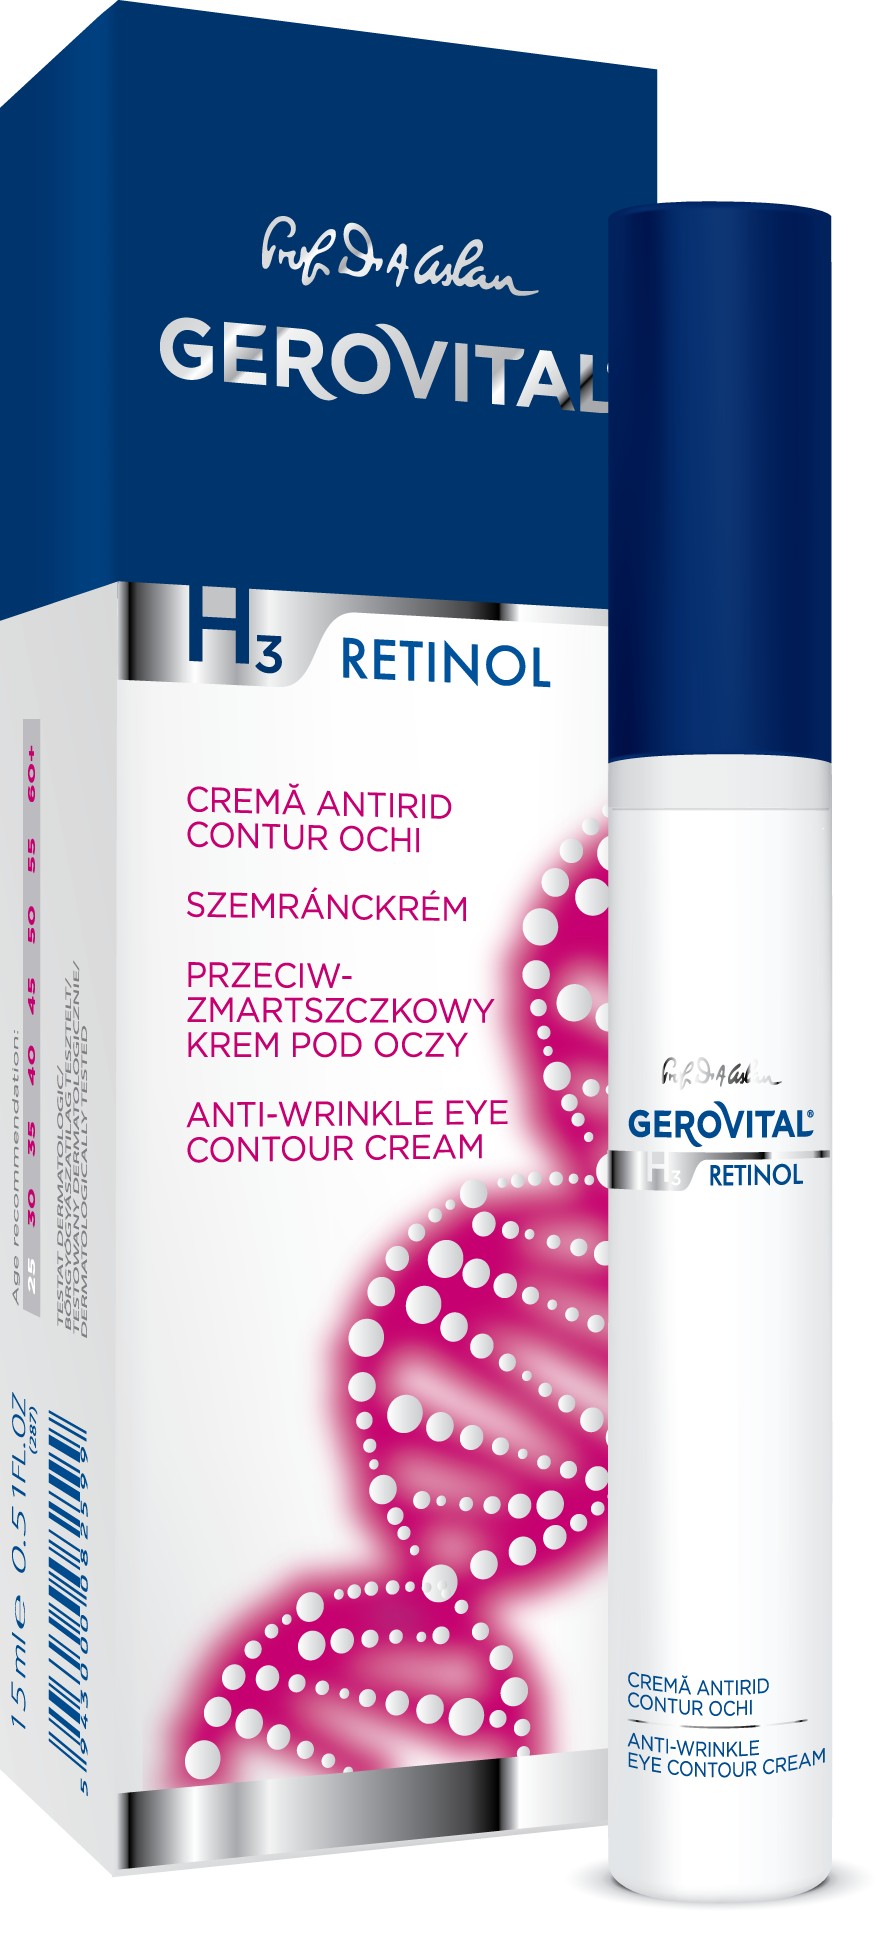 Mi a retinol? – Ismerd meg ezt az anti-aging összetevőt!